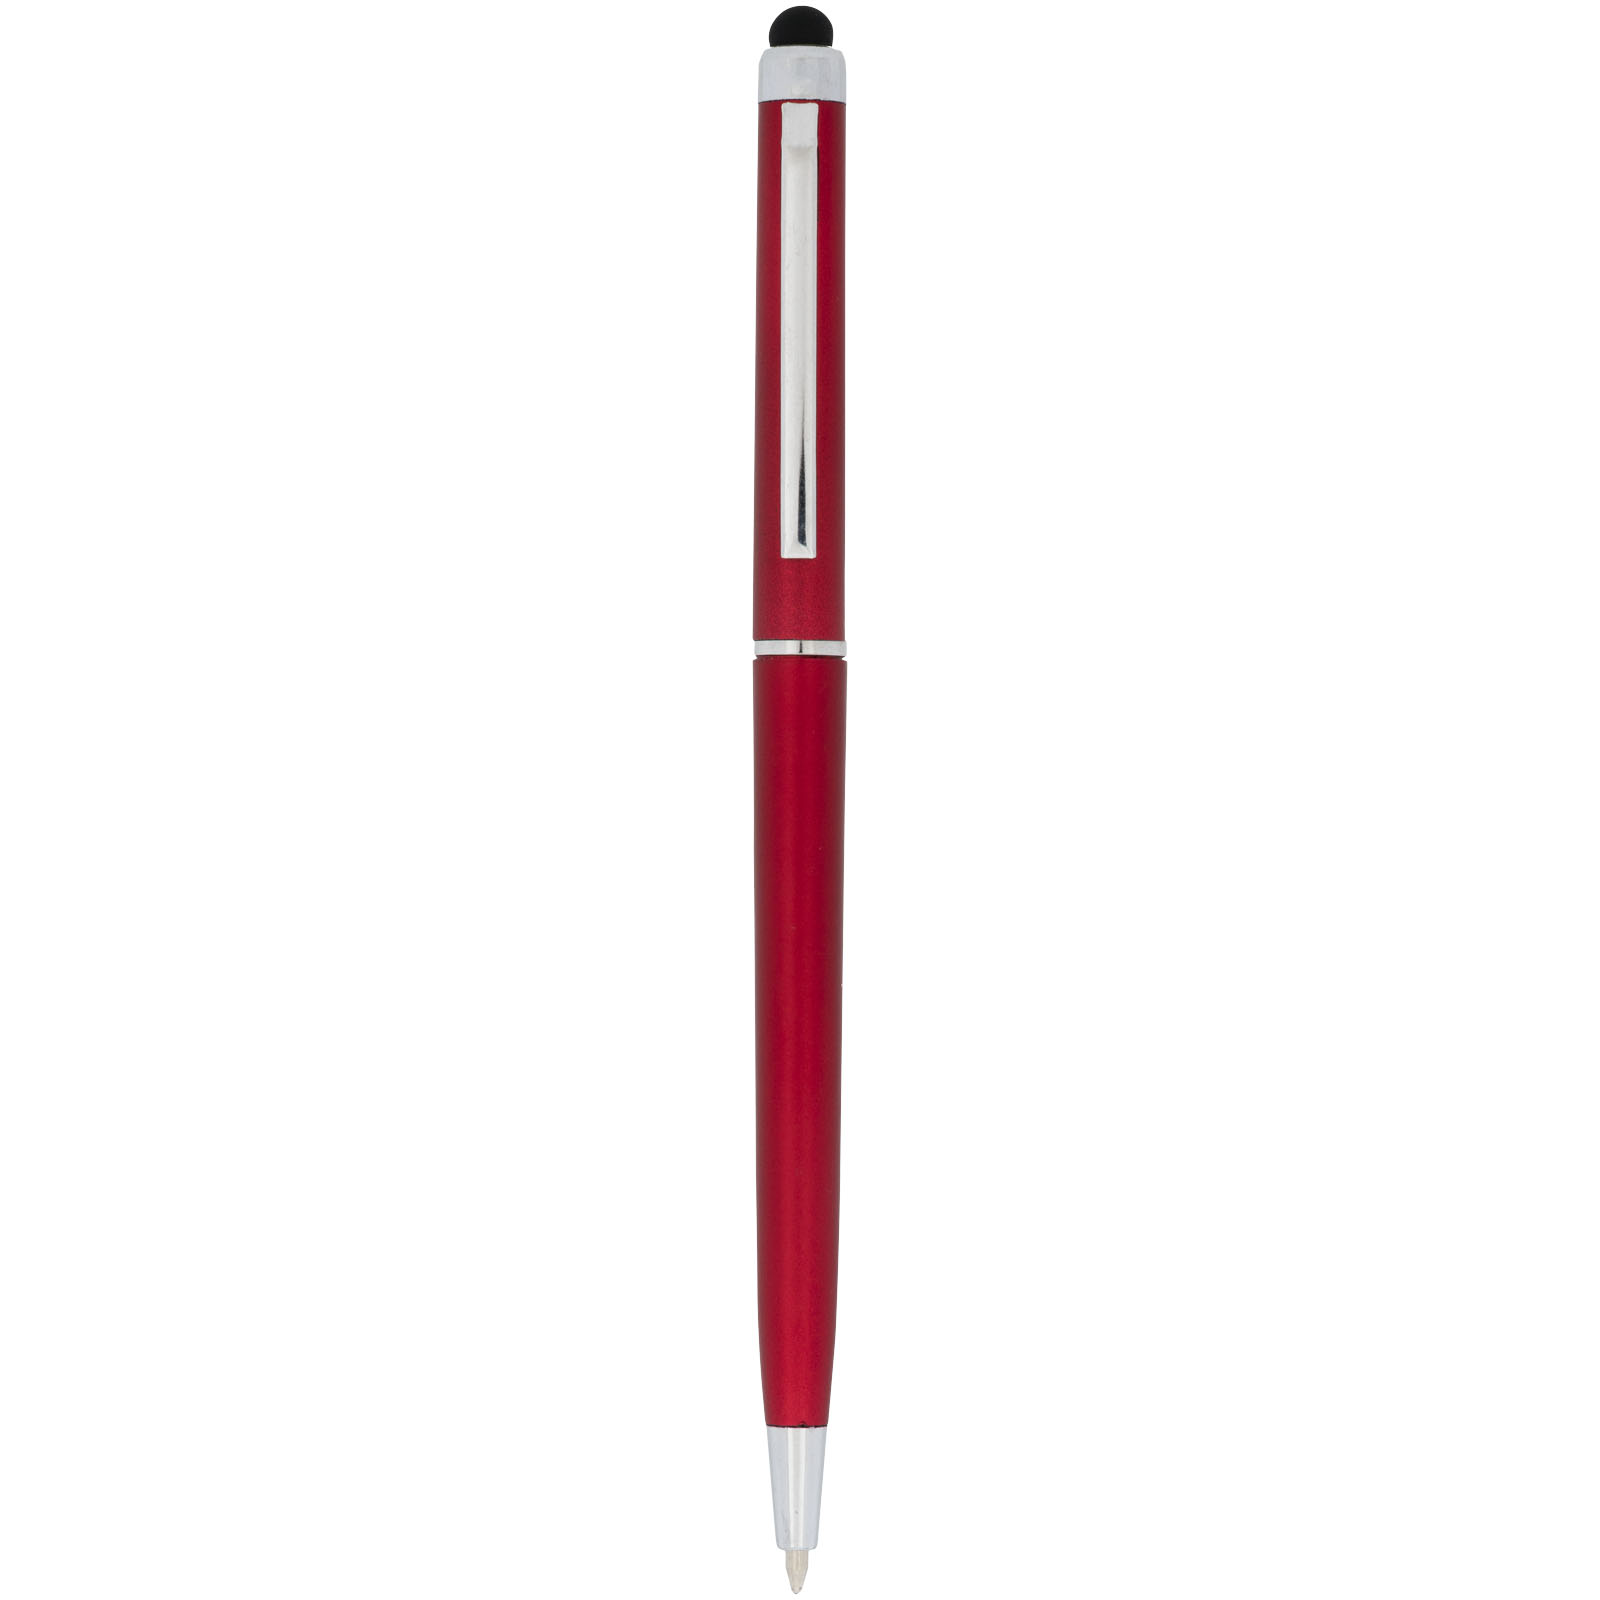 Advertising Ballpoint Pens - Valeria ABS ballpoint pen with stylus - 0